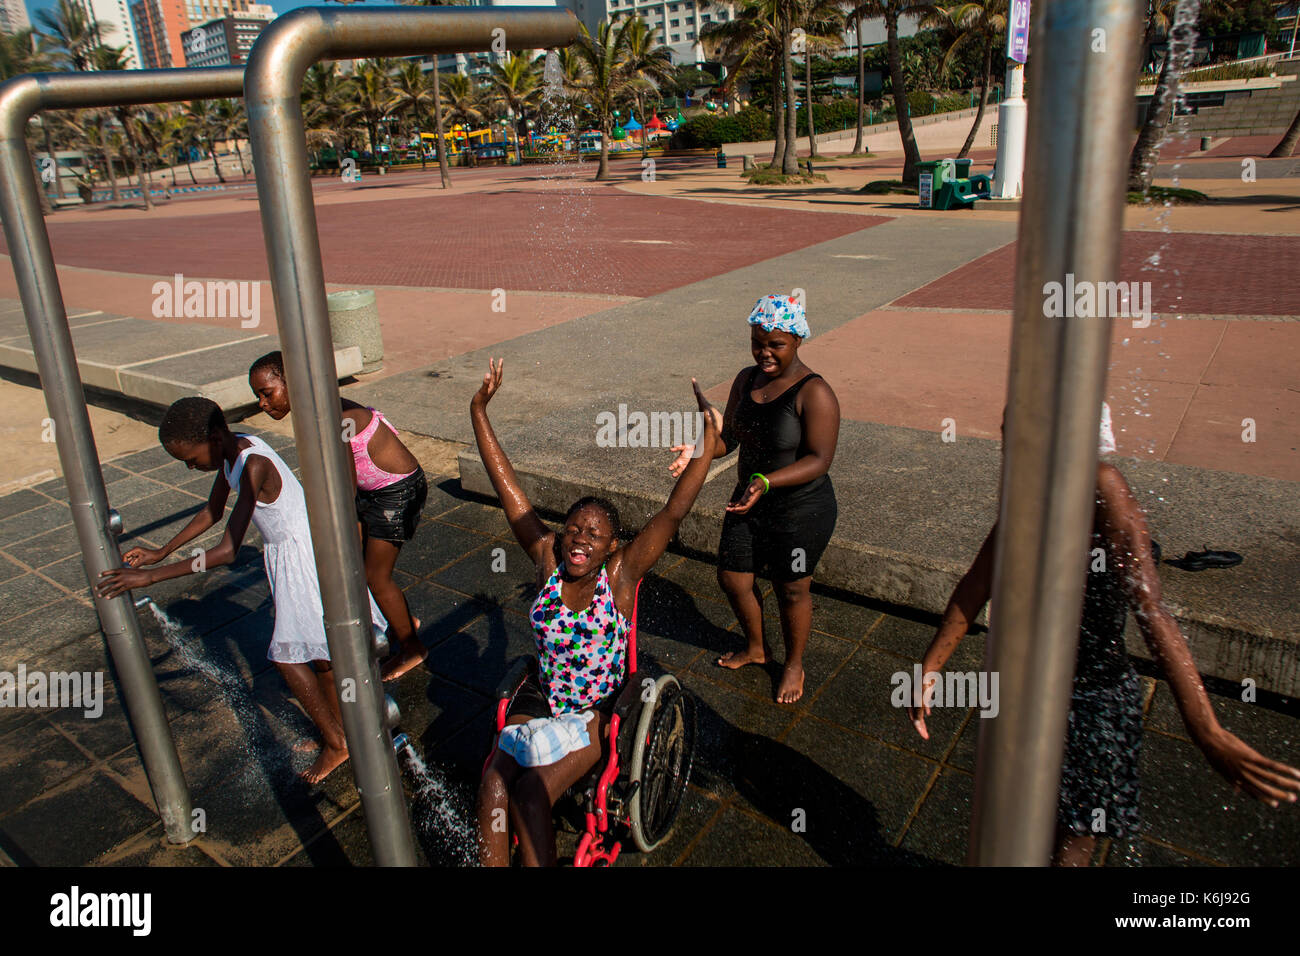 Las niñas, incluyendo uno en silla de ruedas, reír, jugar y ducha después de estar en piscinas públicas en Promenade en la Milla Dorada de Durban, Sudáfrica Foto de stock